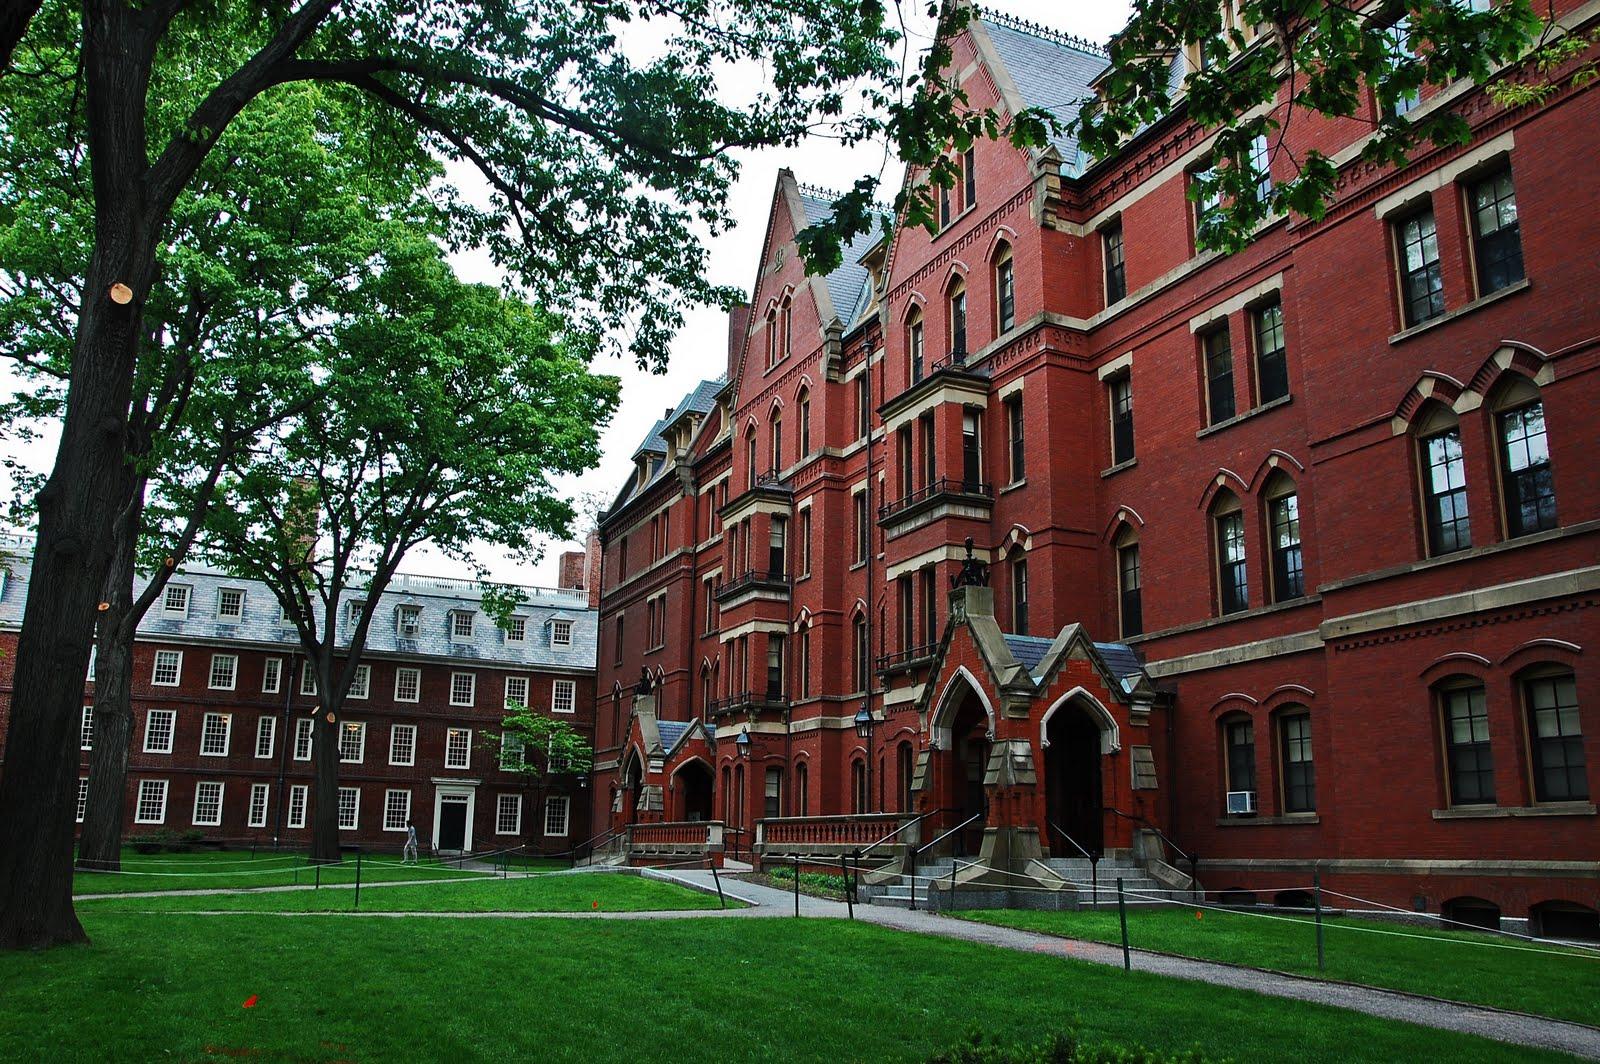 الدراسة في جامعة عالمية مجانا ... الدراسة في الخارج مجانا - جامعة هارفارد